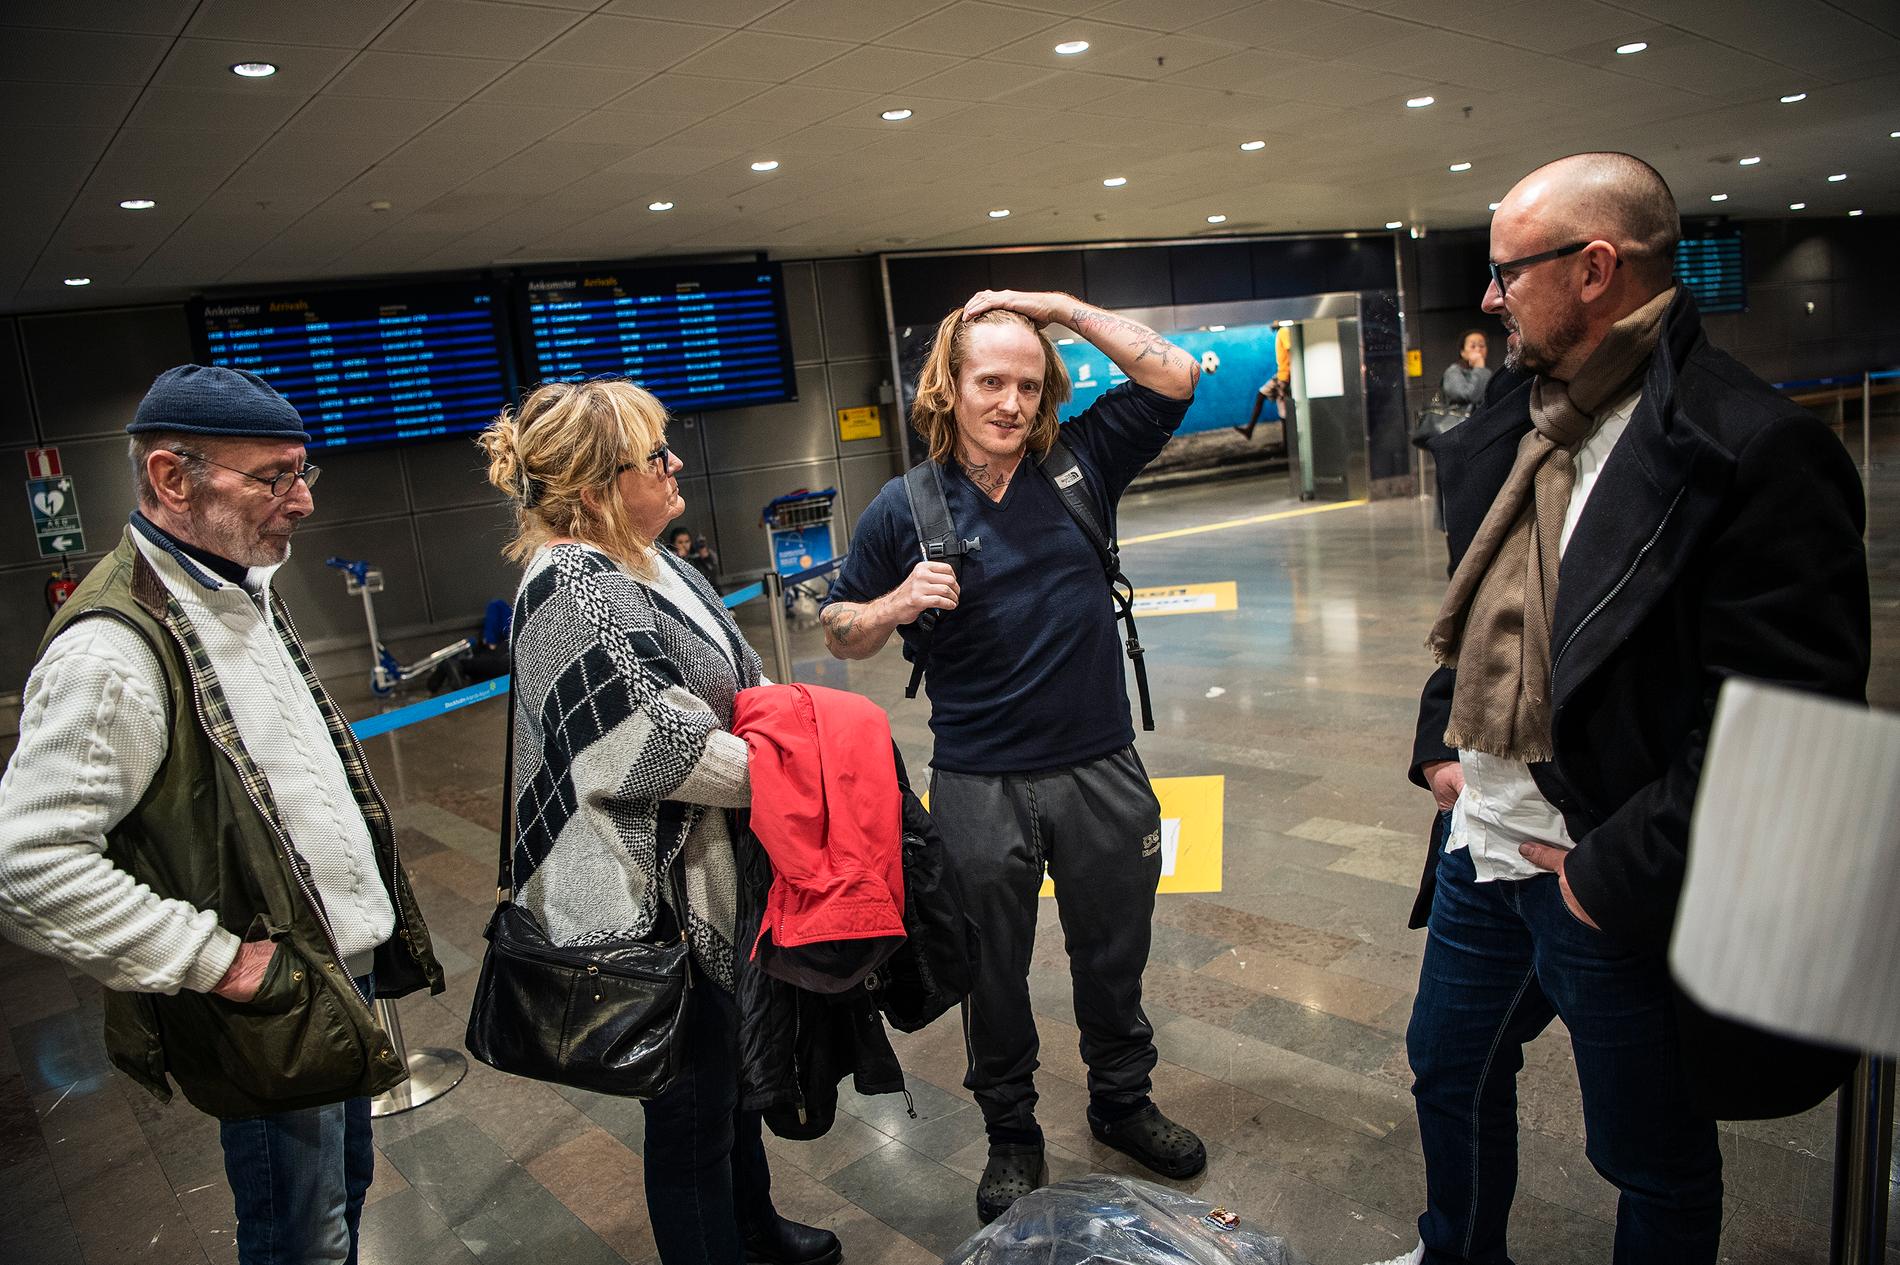 Daniel Bakke, en av de så kallade "Tunisiensvenskarna" har släppts och landar på Arlanda efter 4 år i fängelse i Tunisien.